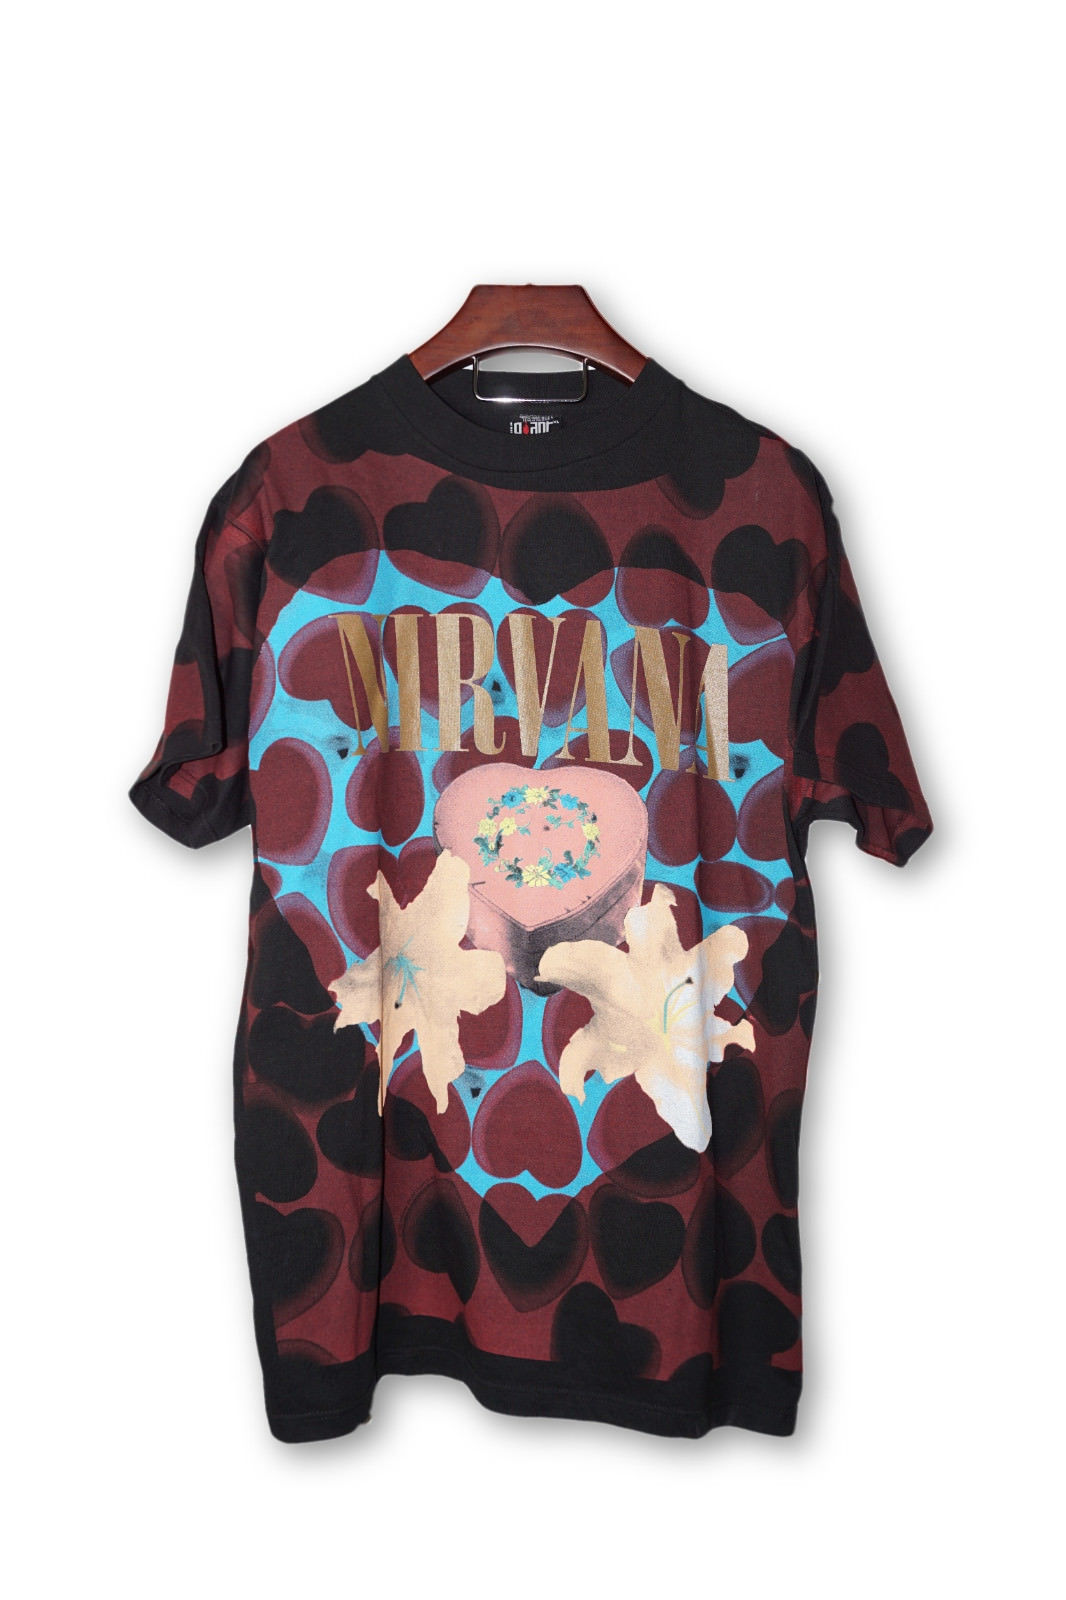 Nirvana ハートシェイプボックス Tシャツ 1993 当時物 ヴィンテージ